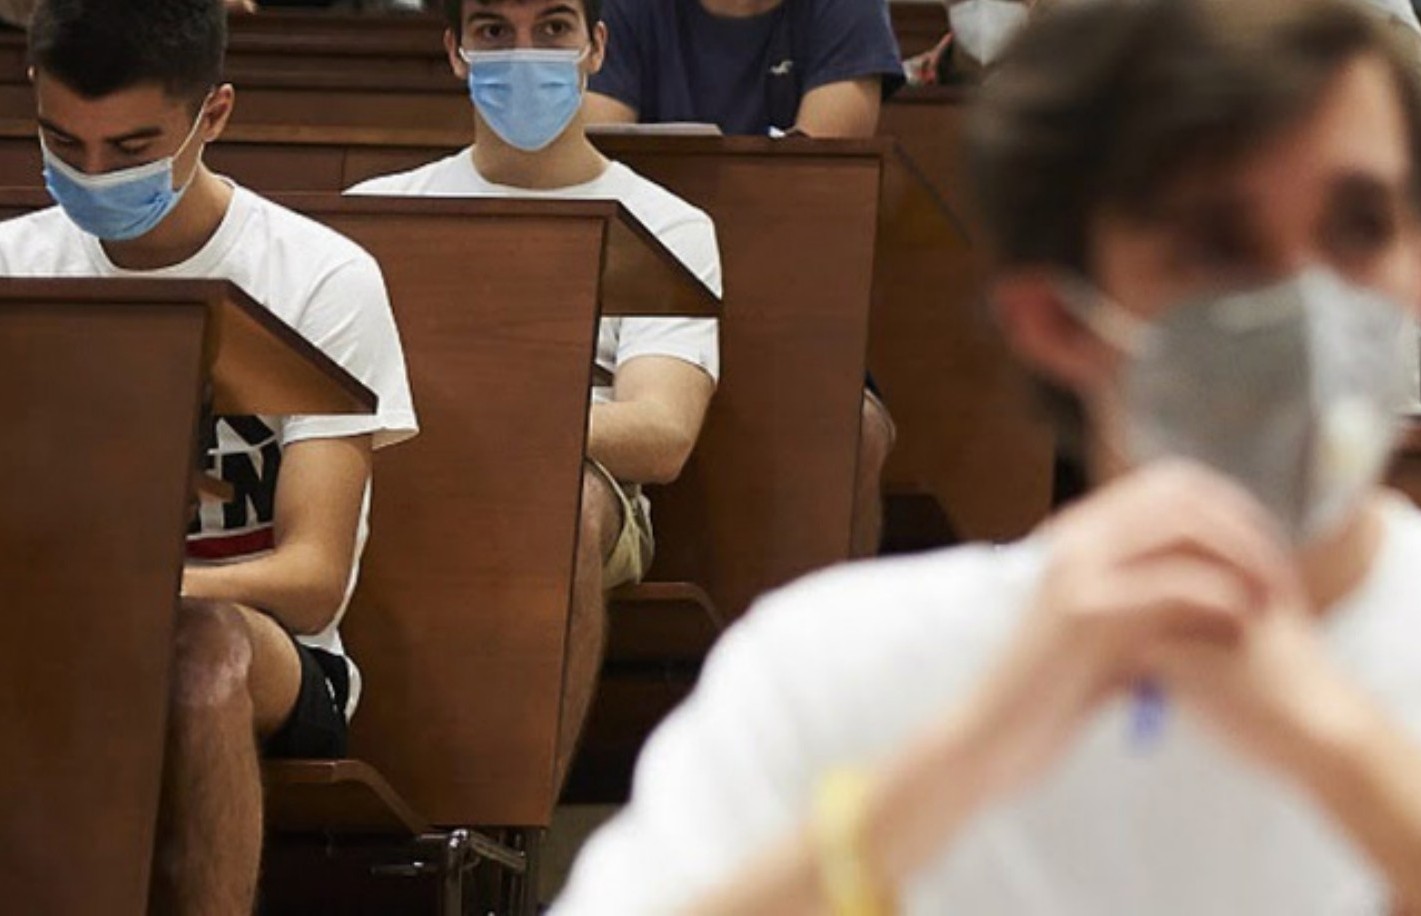  Πανεπιστήμια: Διαδικασία self test και υποχρεωτική χρήση μάσκας για τις εξετάσεις με φυσική παρουσία